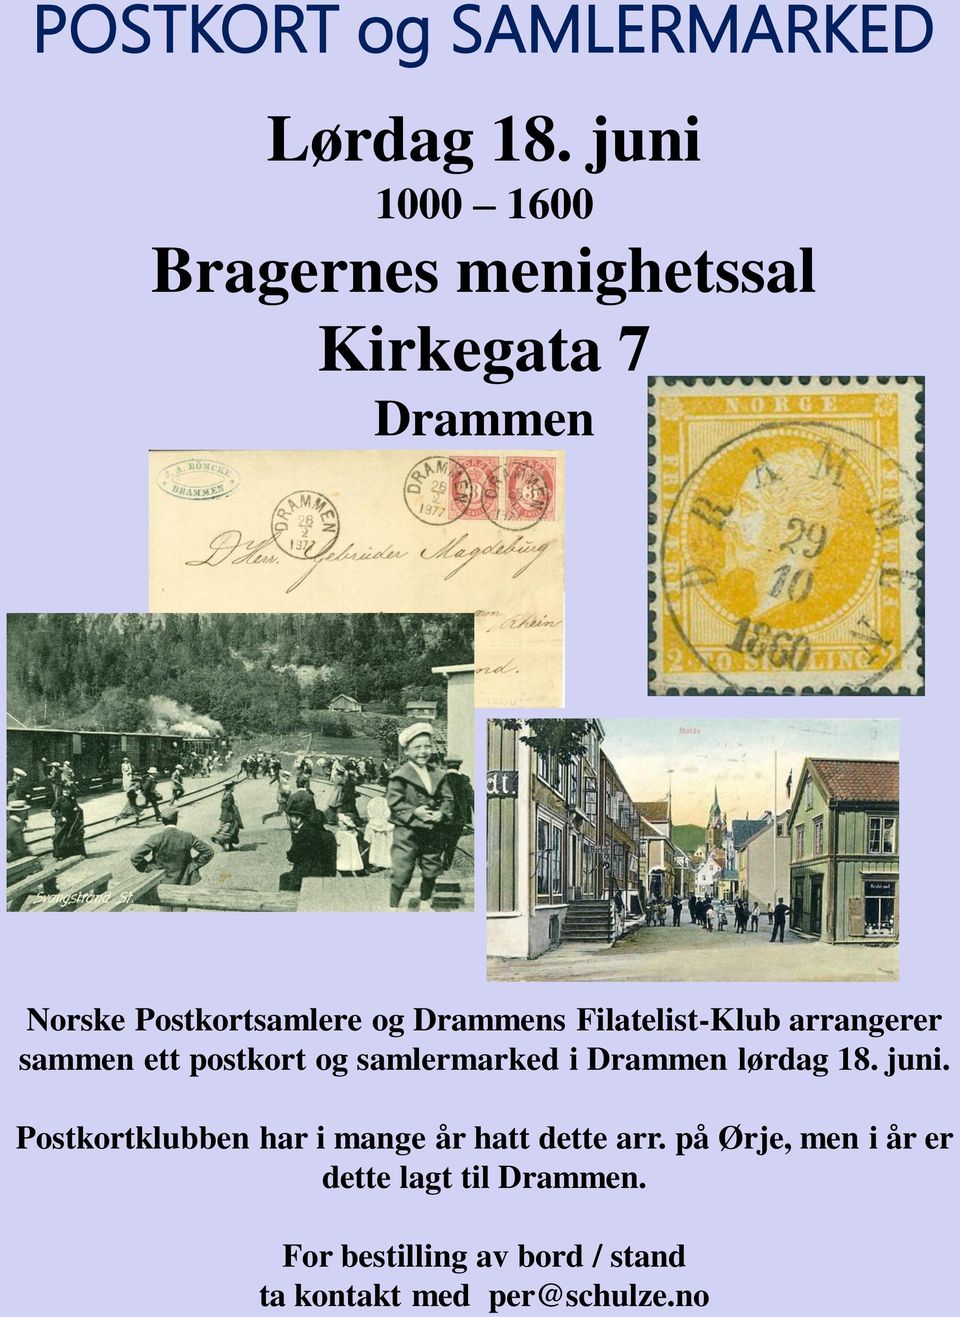 Filatelist-Klub arrangerer sammen ett postkort og samlermarked i Drammen lørdag 18. juni.